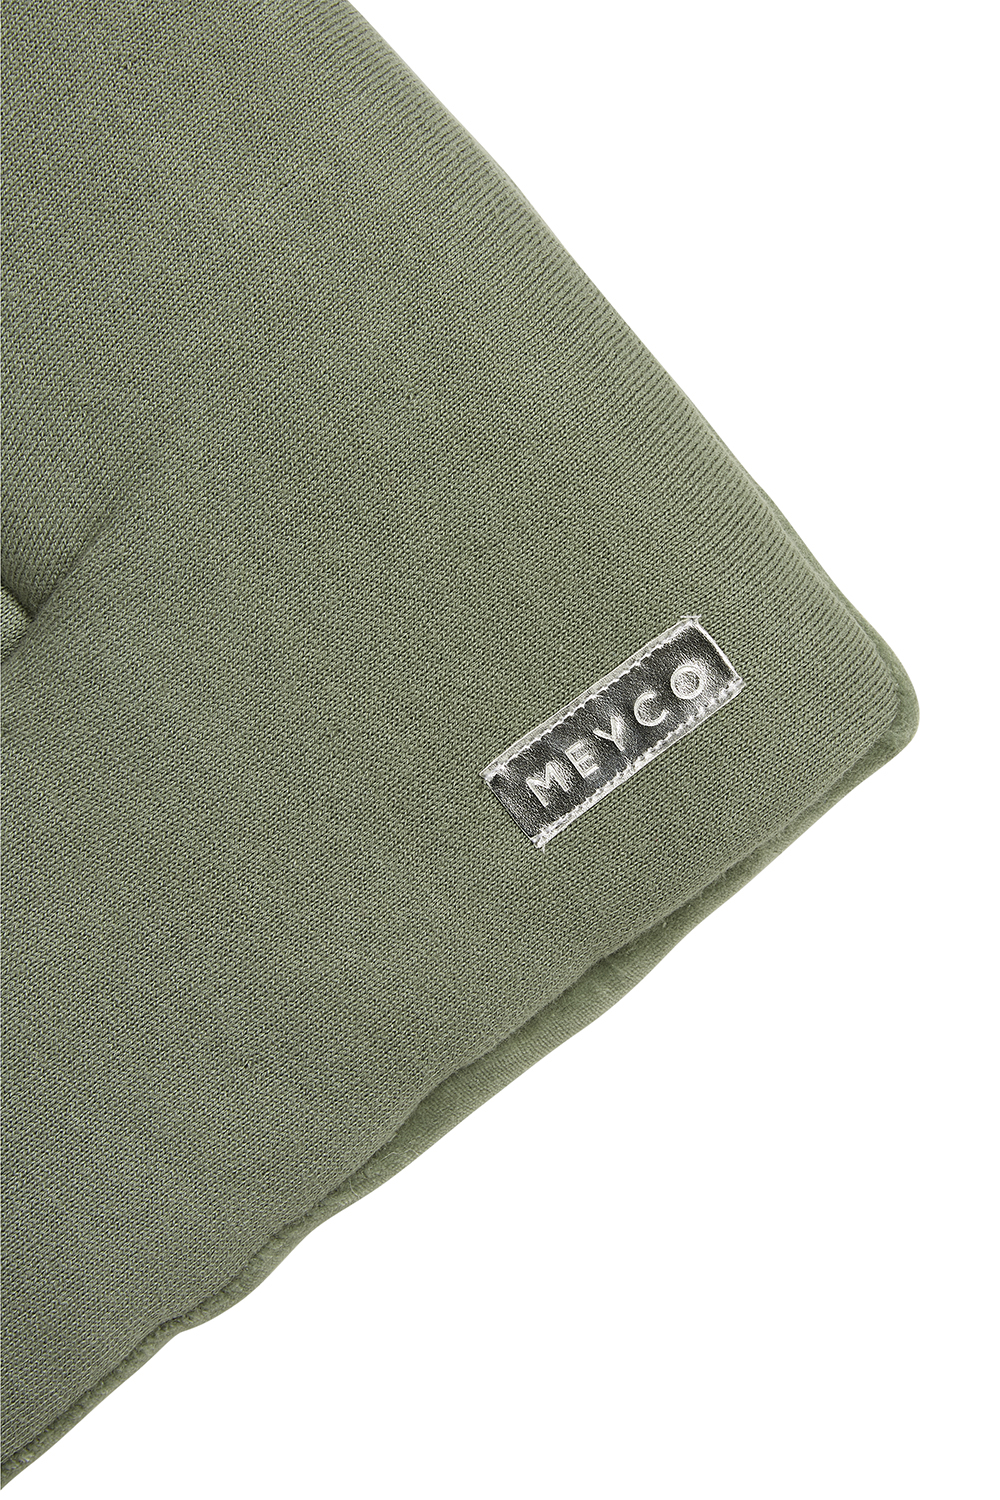 Boxkleed Knit Basic velvet - forest green - 77x97cm